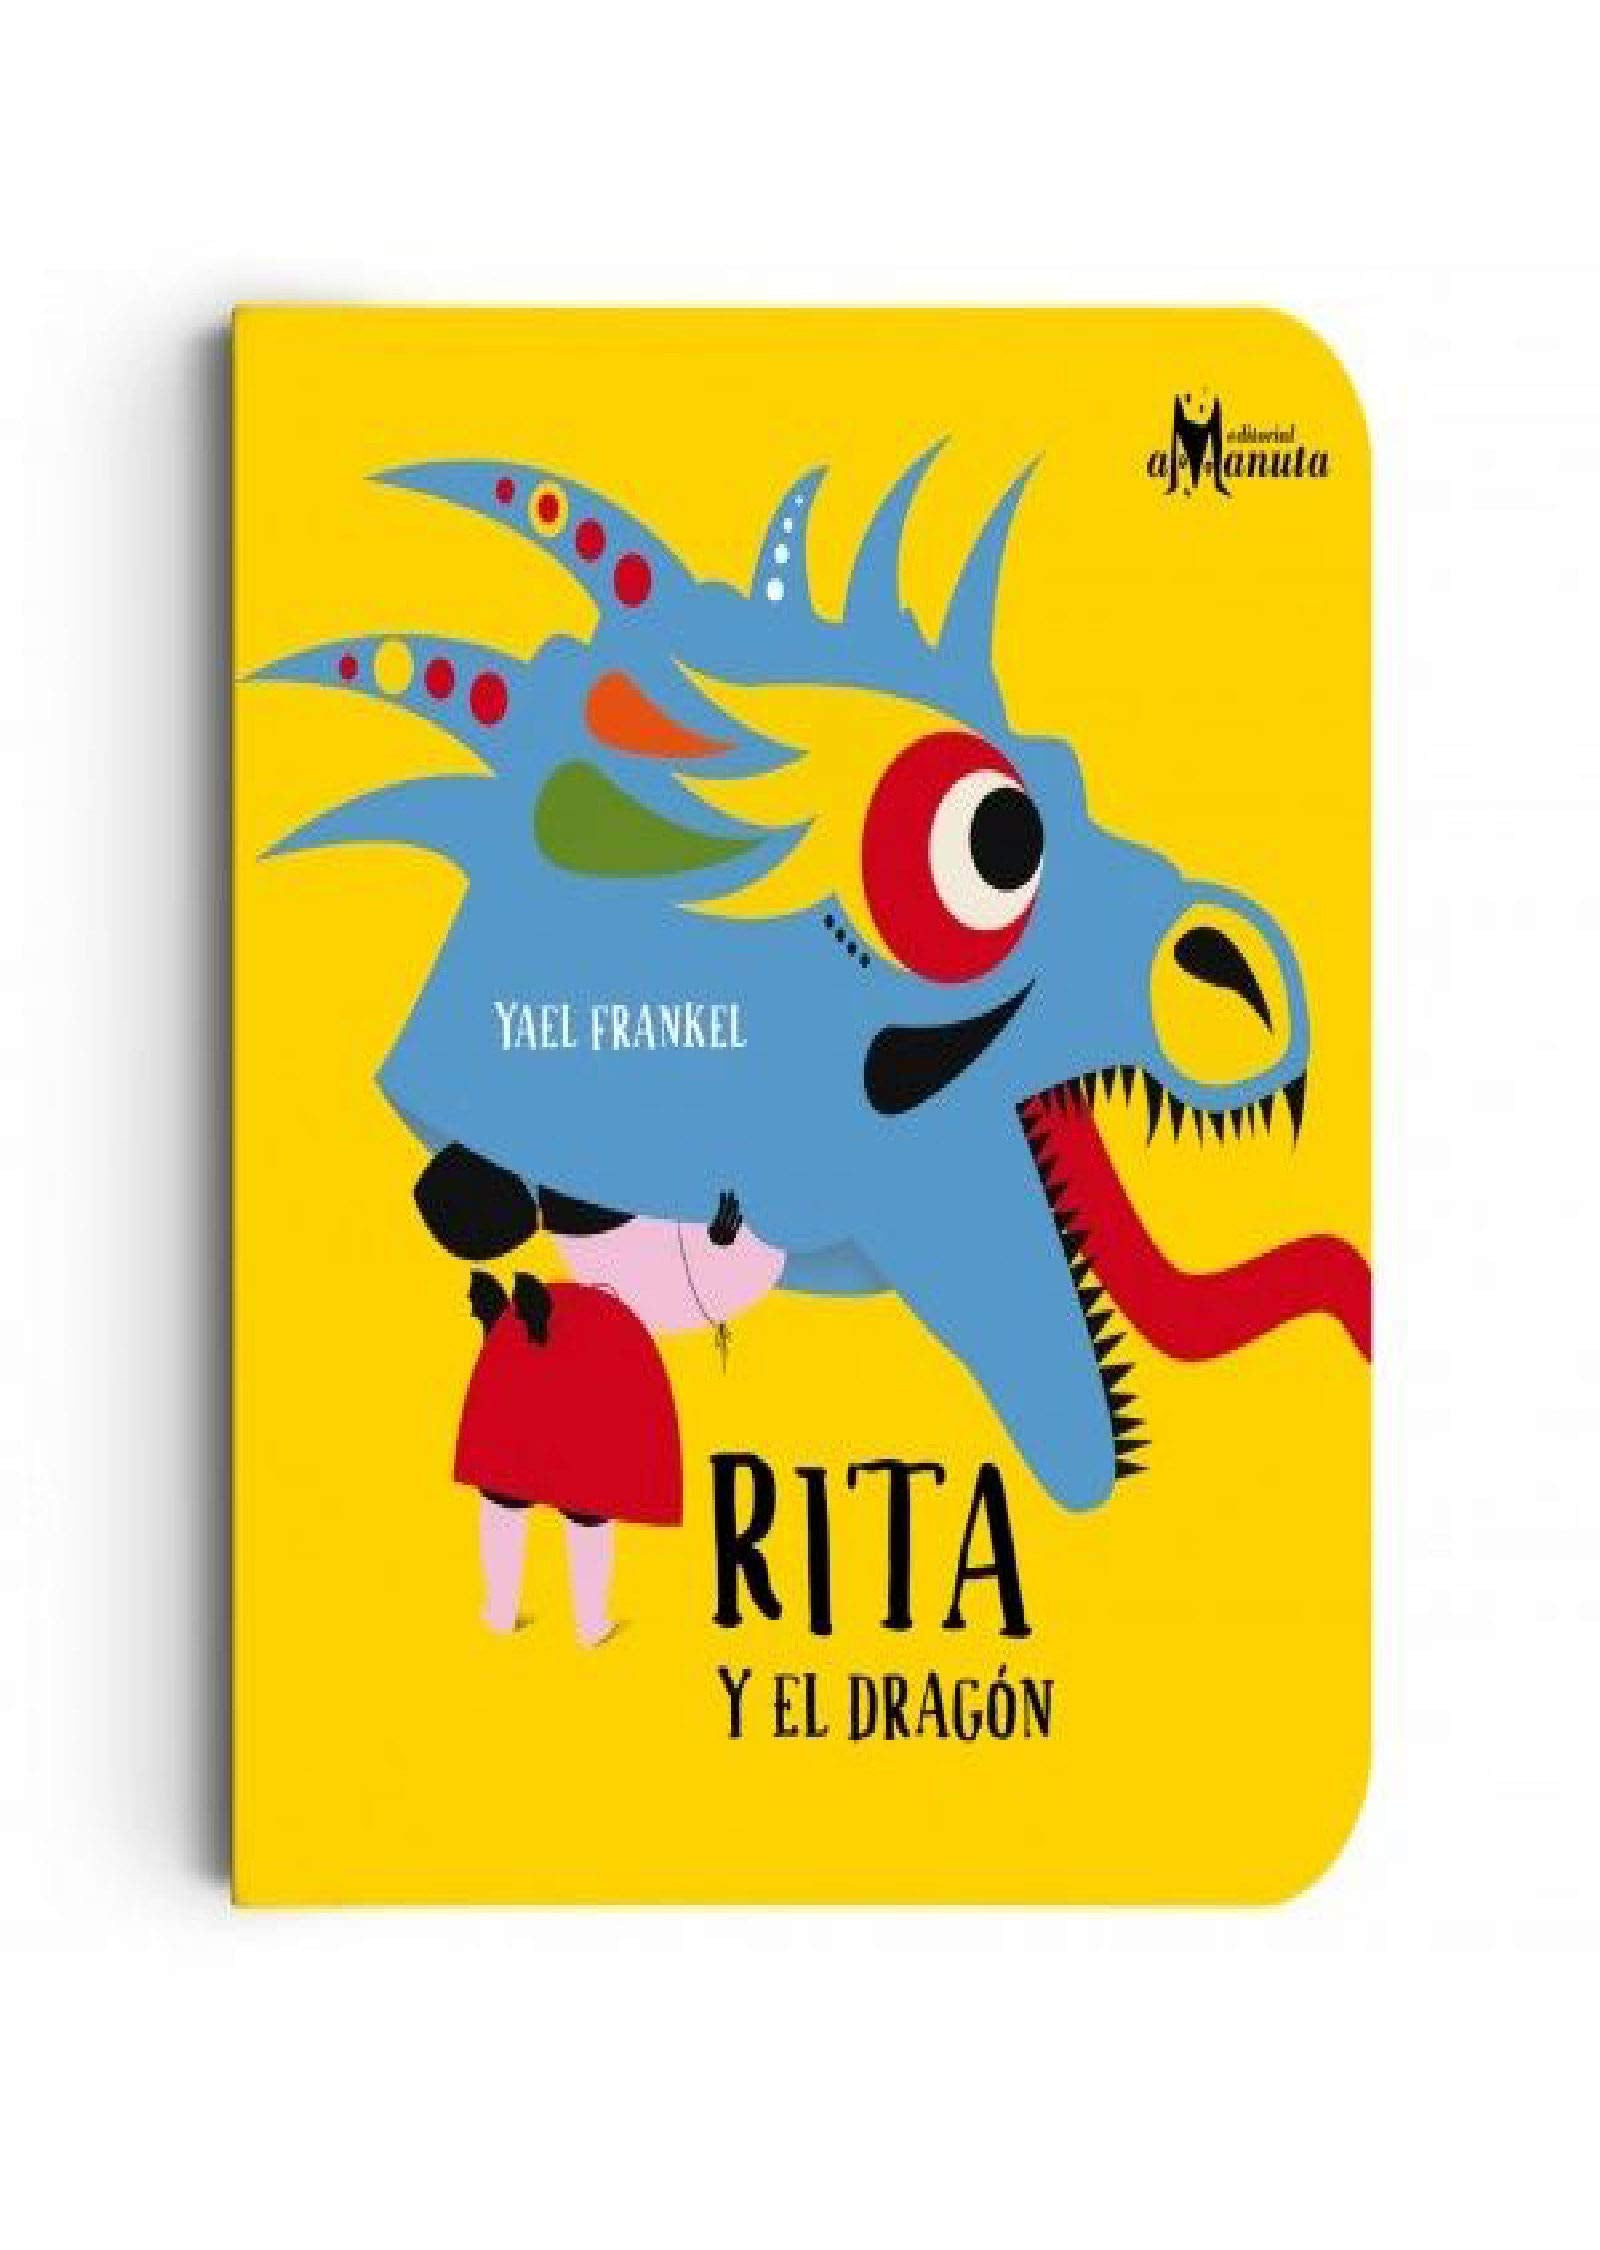 Rita y el dragon